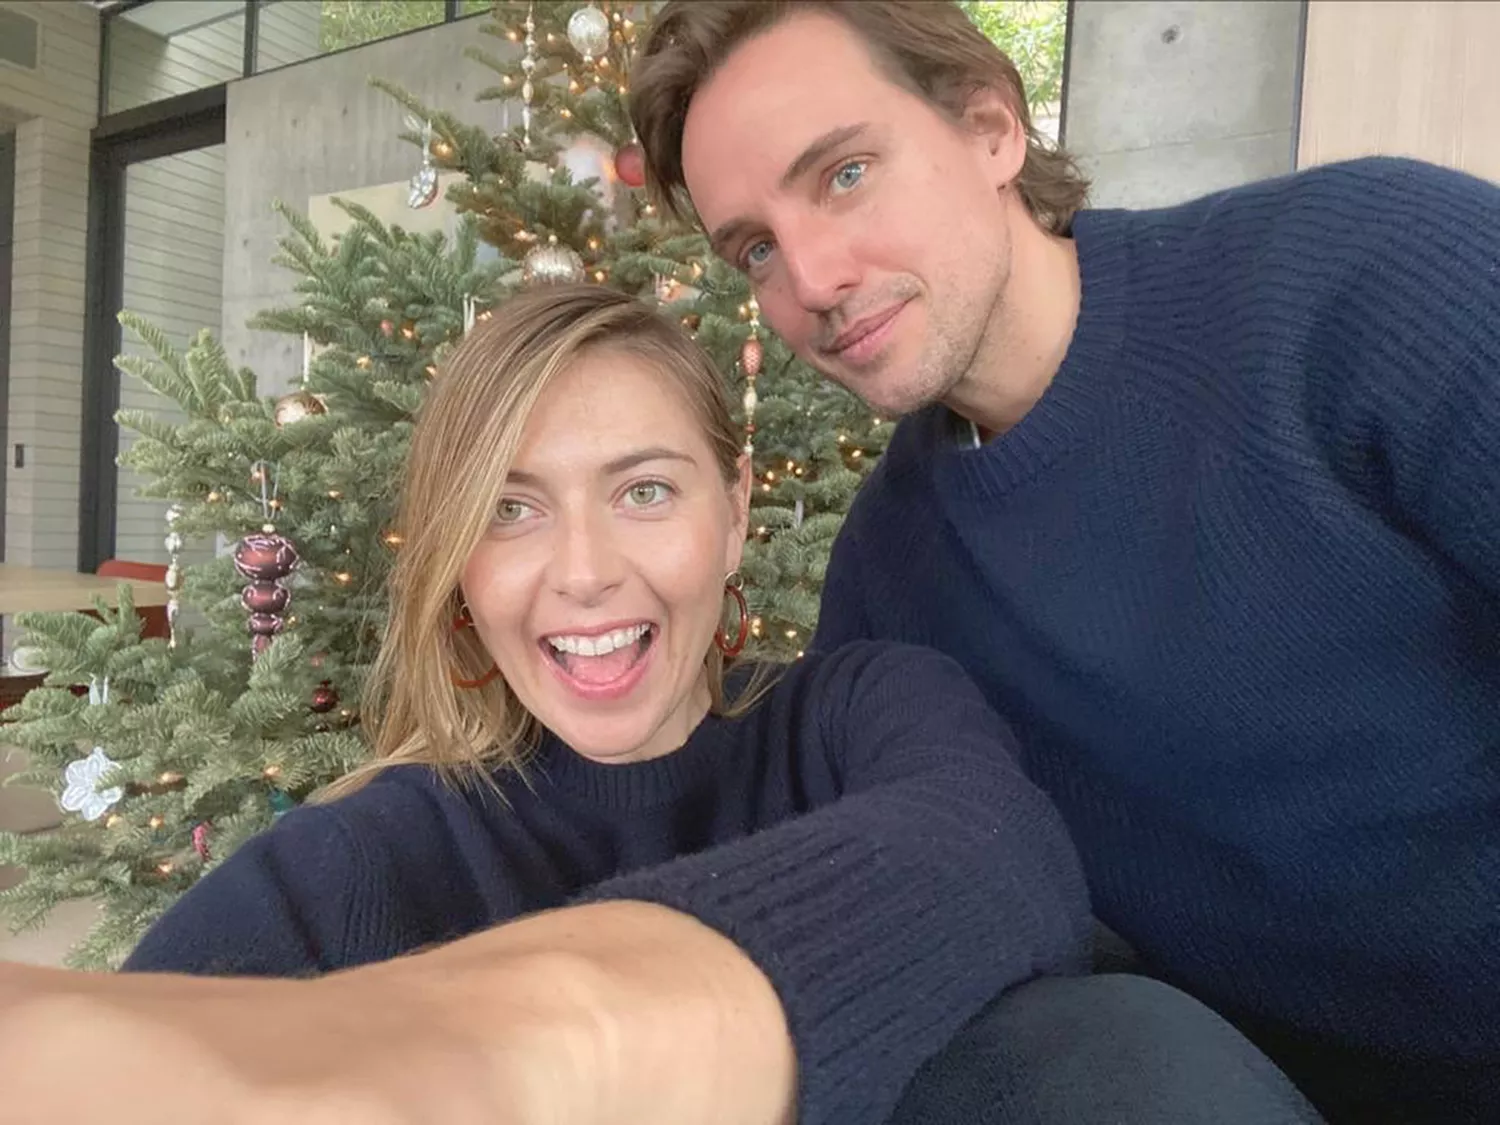 Maria Sharapova and Alexander Gilkes on Christmas, 2019